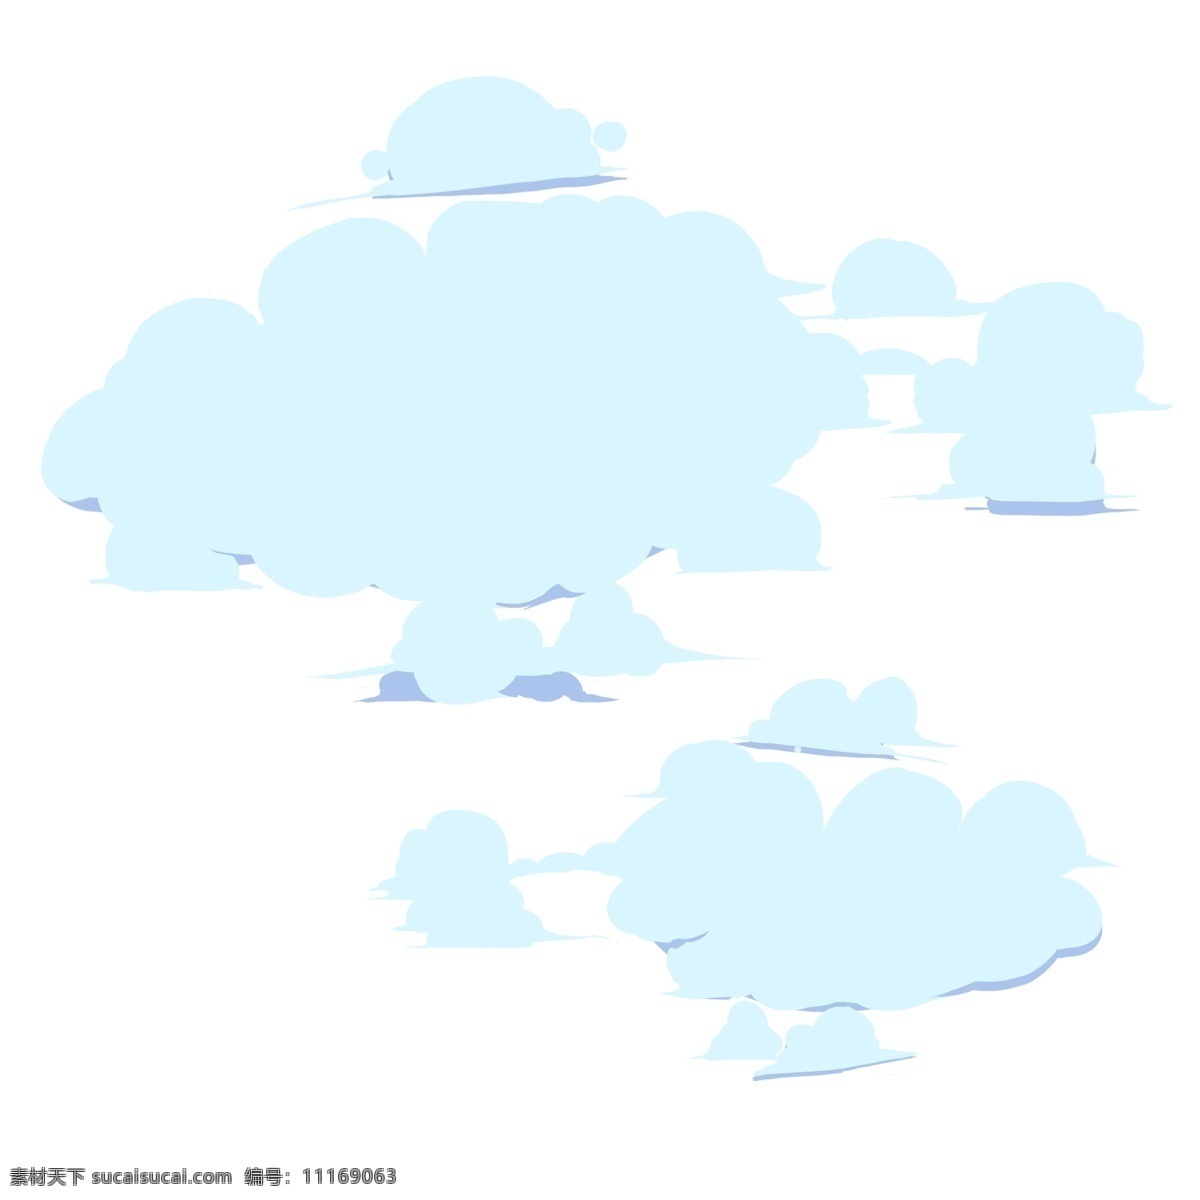 天空 云朵 手绘 卡通 蓝色 装饰 贴画 白云朵朵 天边的 蓝色云彩 颜色 朴素 蓬松 卡通风格 童话风 柔软